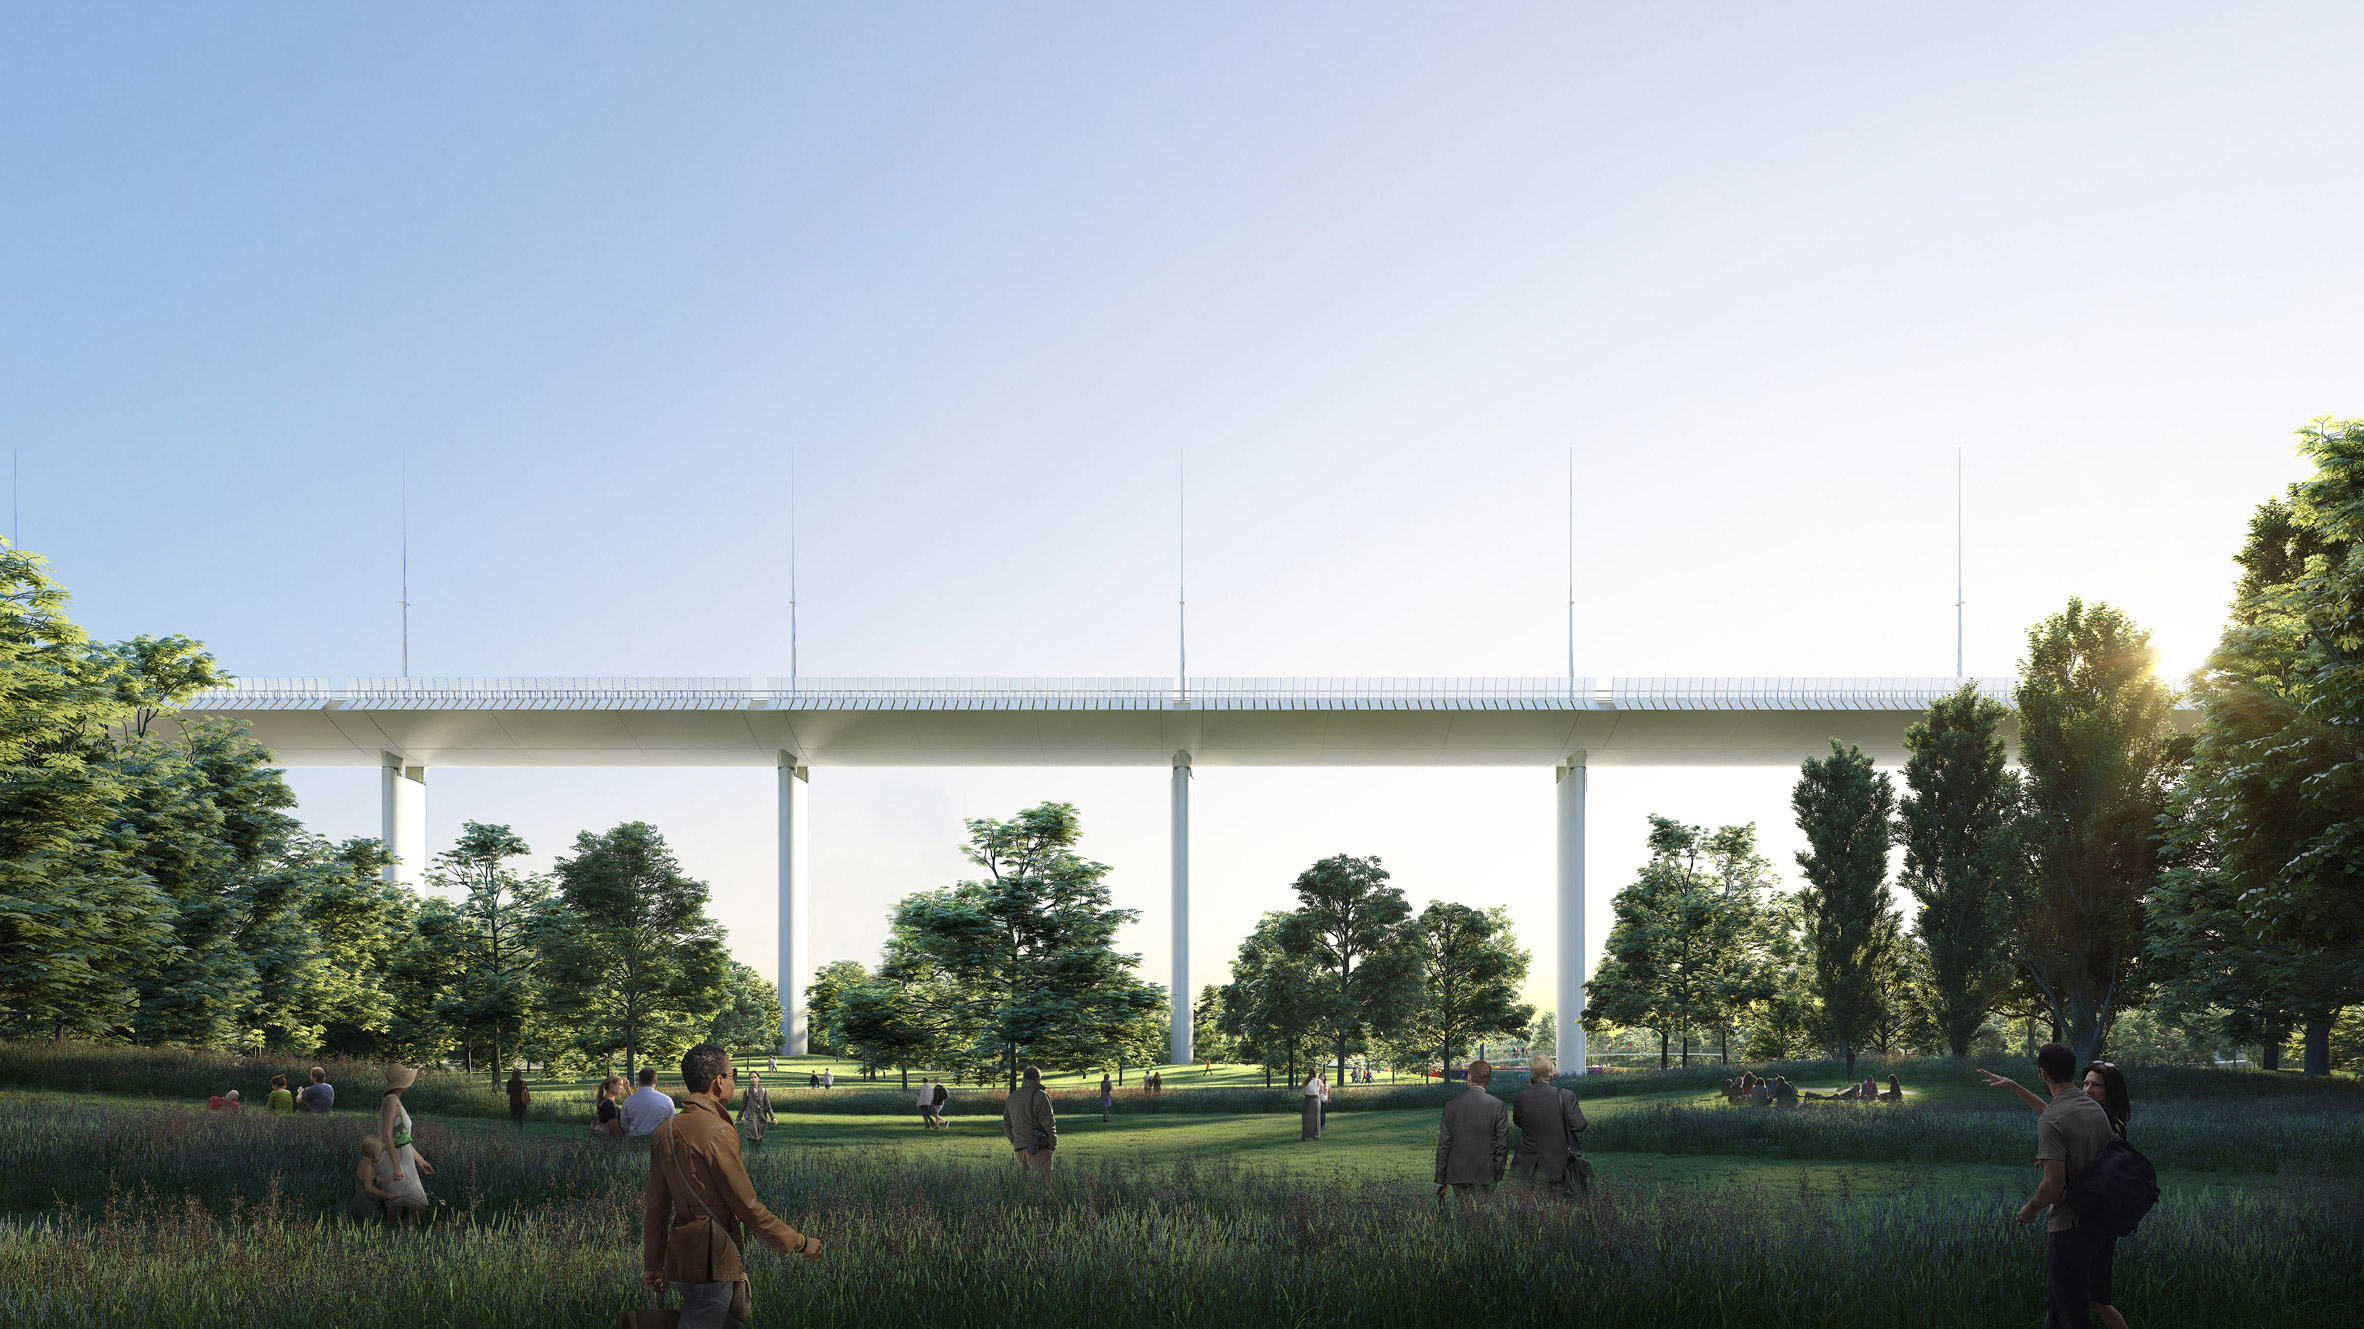 Renzo Piano's designs for a new bridge for Genoa